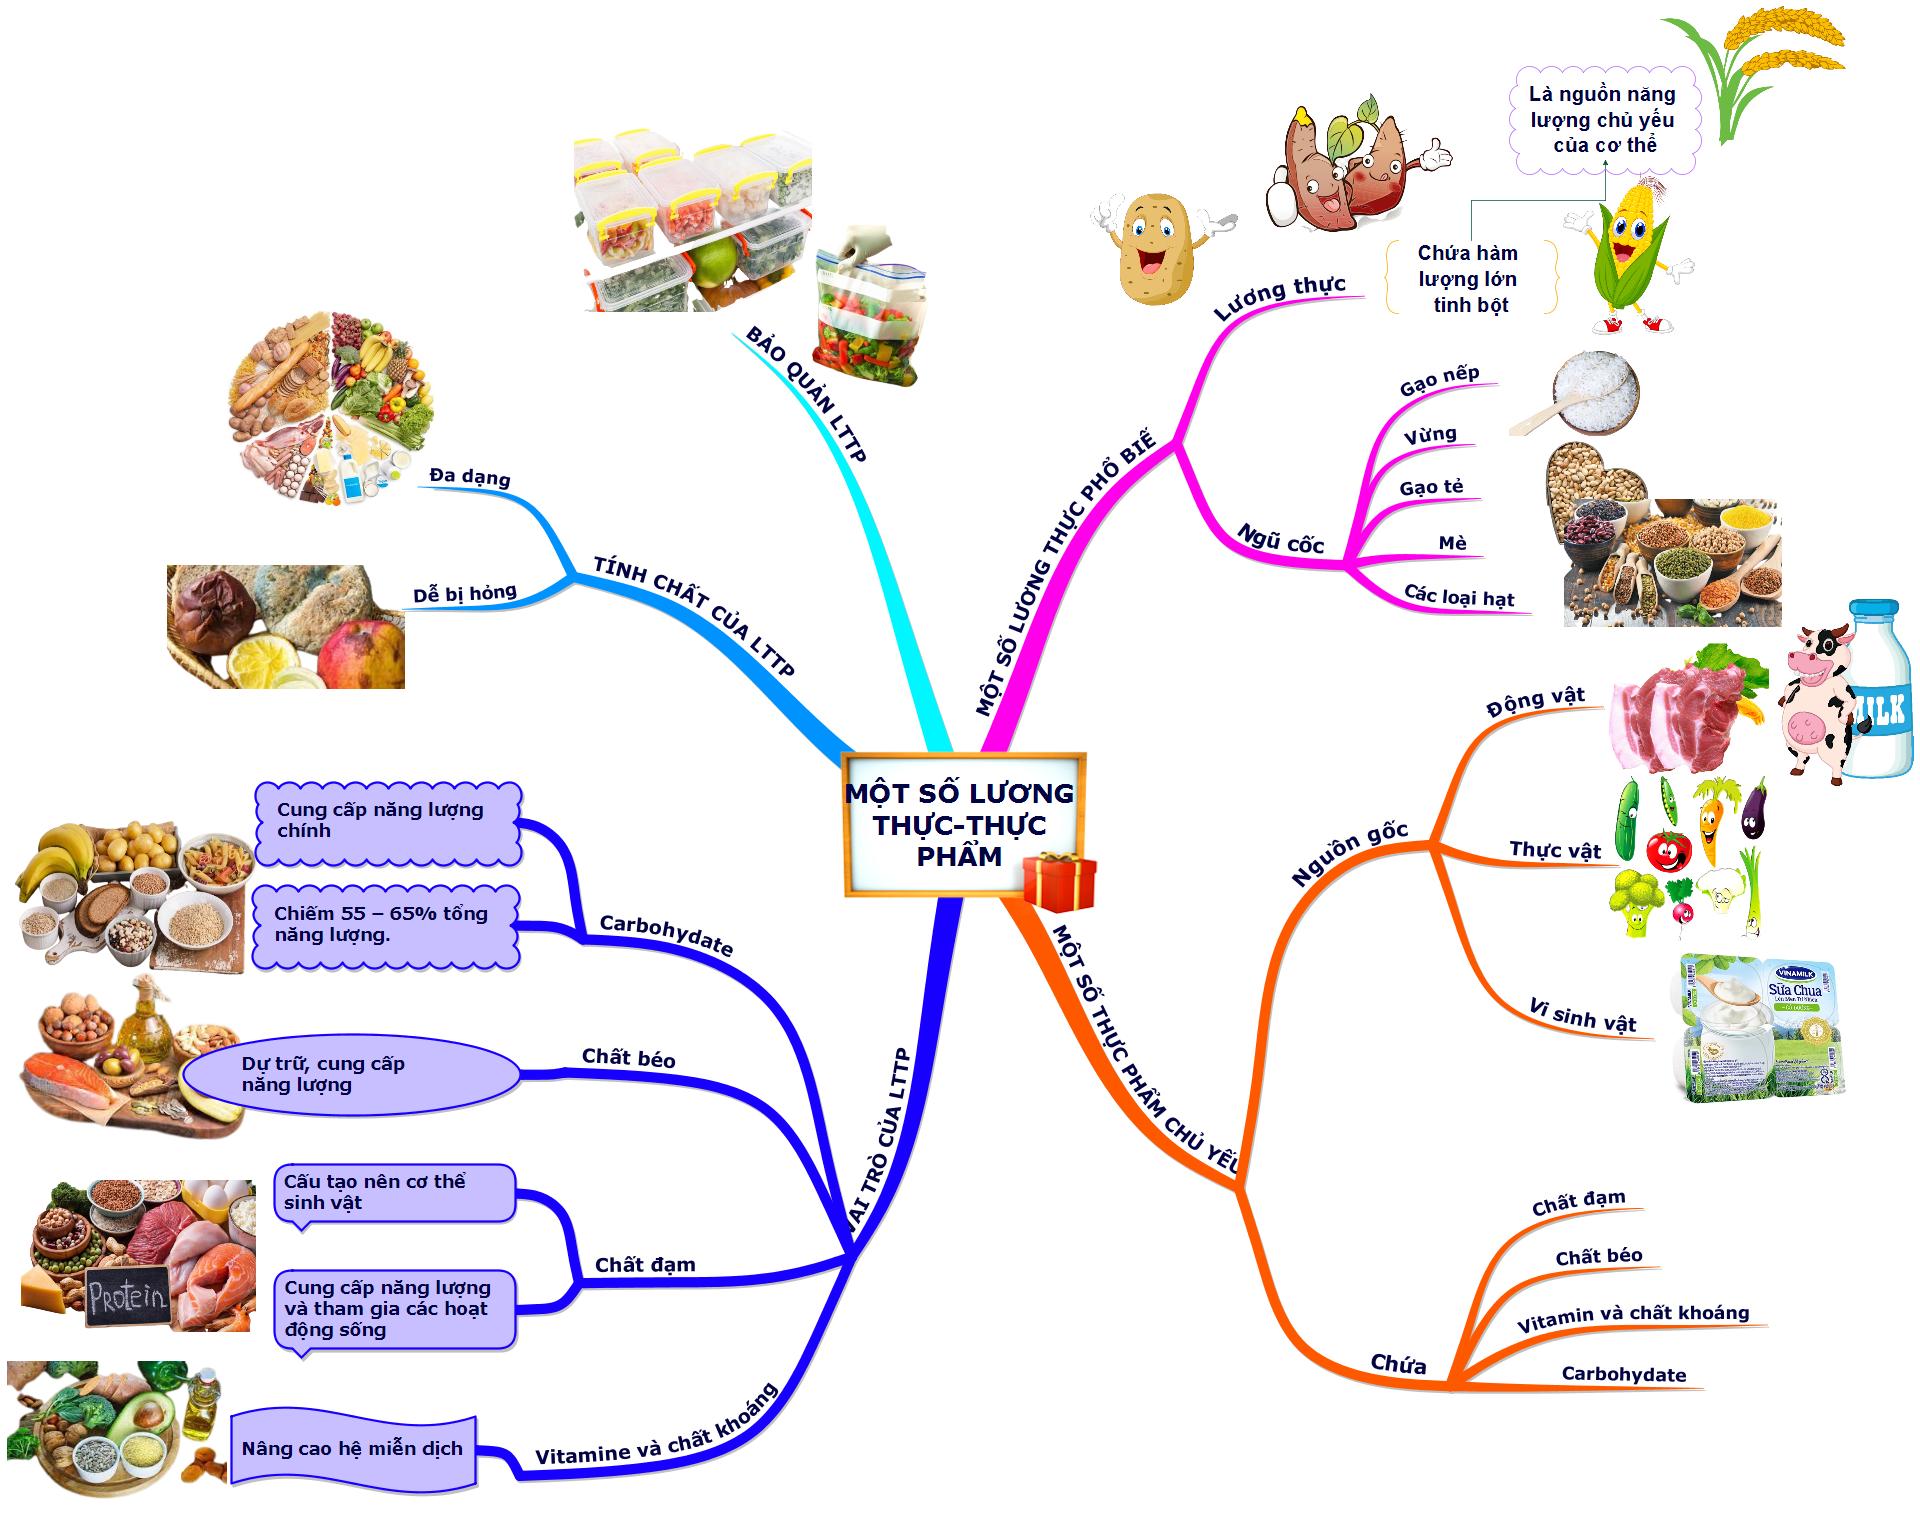 Lý thuyết sơ đồ tư duy bài một số lương thực-thực phẩm sinh 6